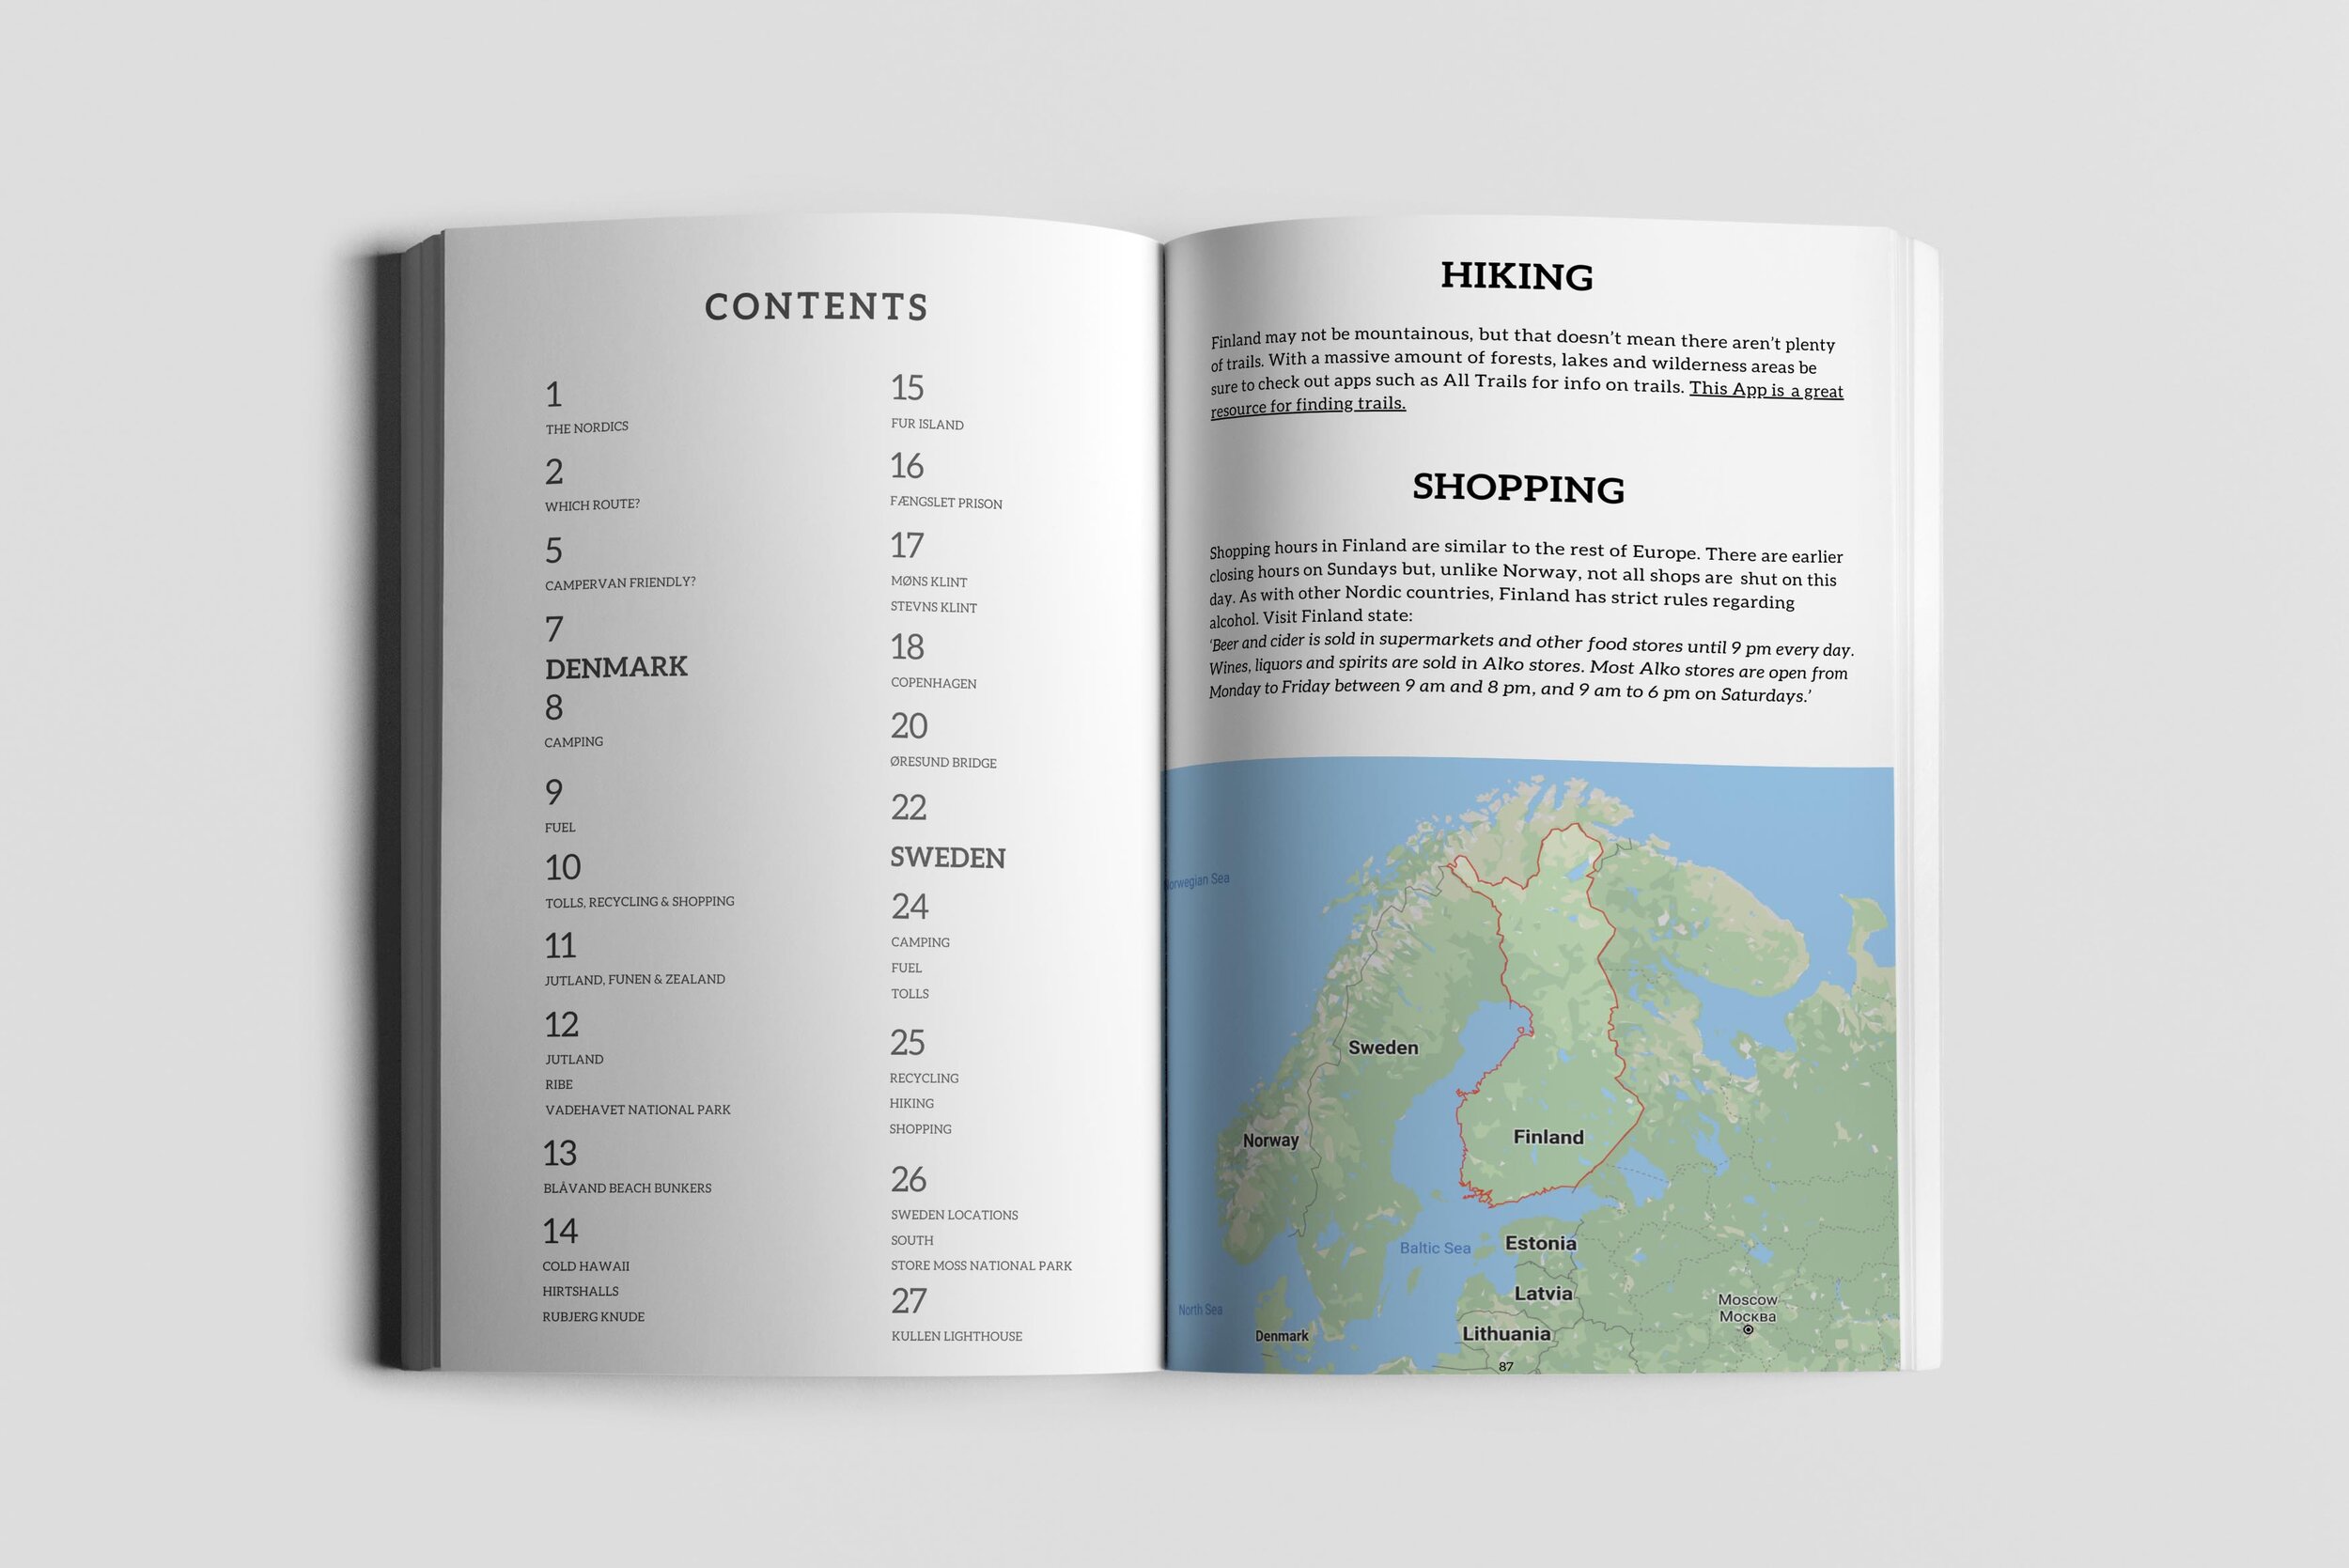 Travel the Nordics Ebook